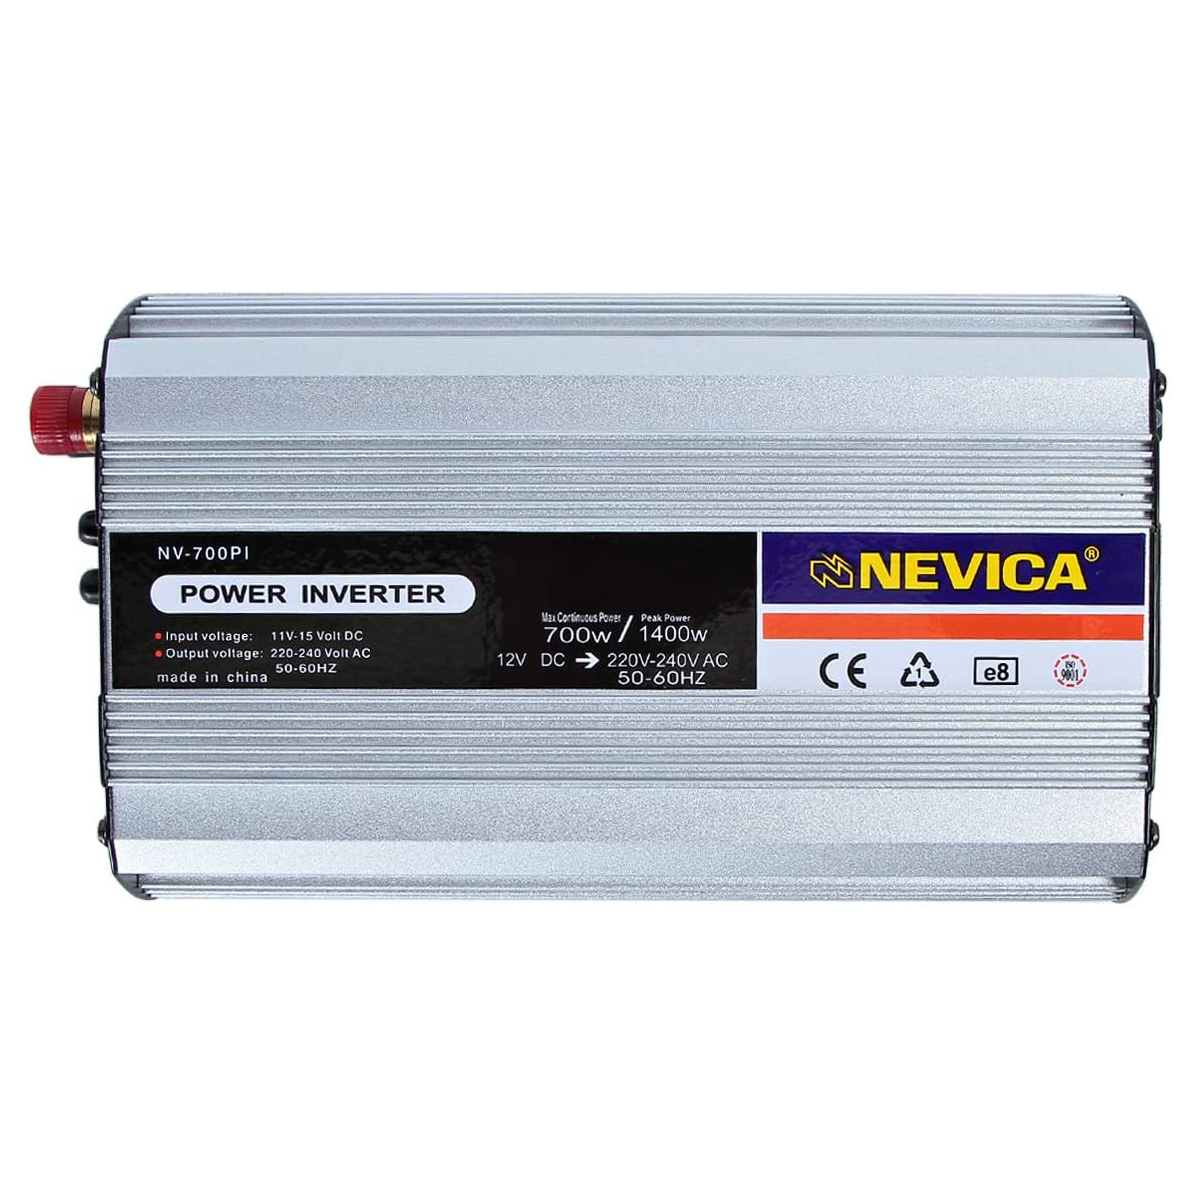 Nevica External Power Inverter - NV-700PI